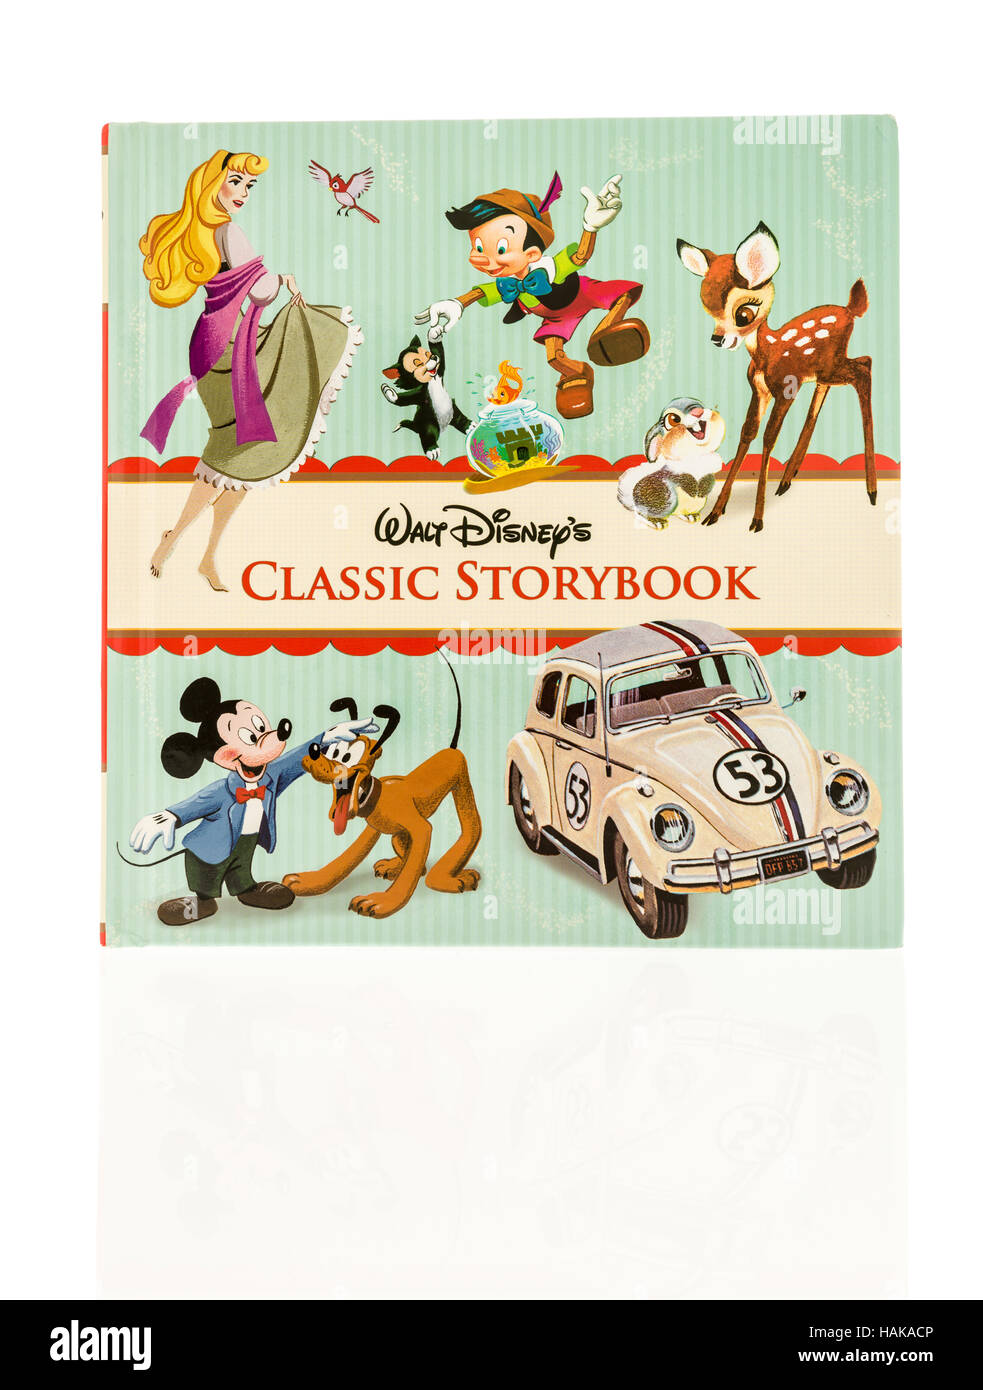 Winneconne, WI - 30 novembre 2016 : Walt Disney livre containgin classique des histoires de personnages Disney classique sur un fond isolé. Banque D'Images